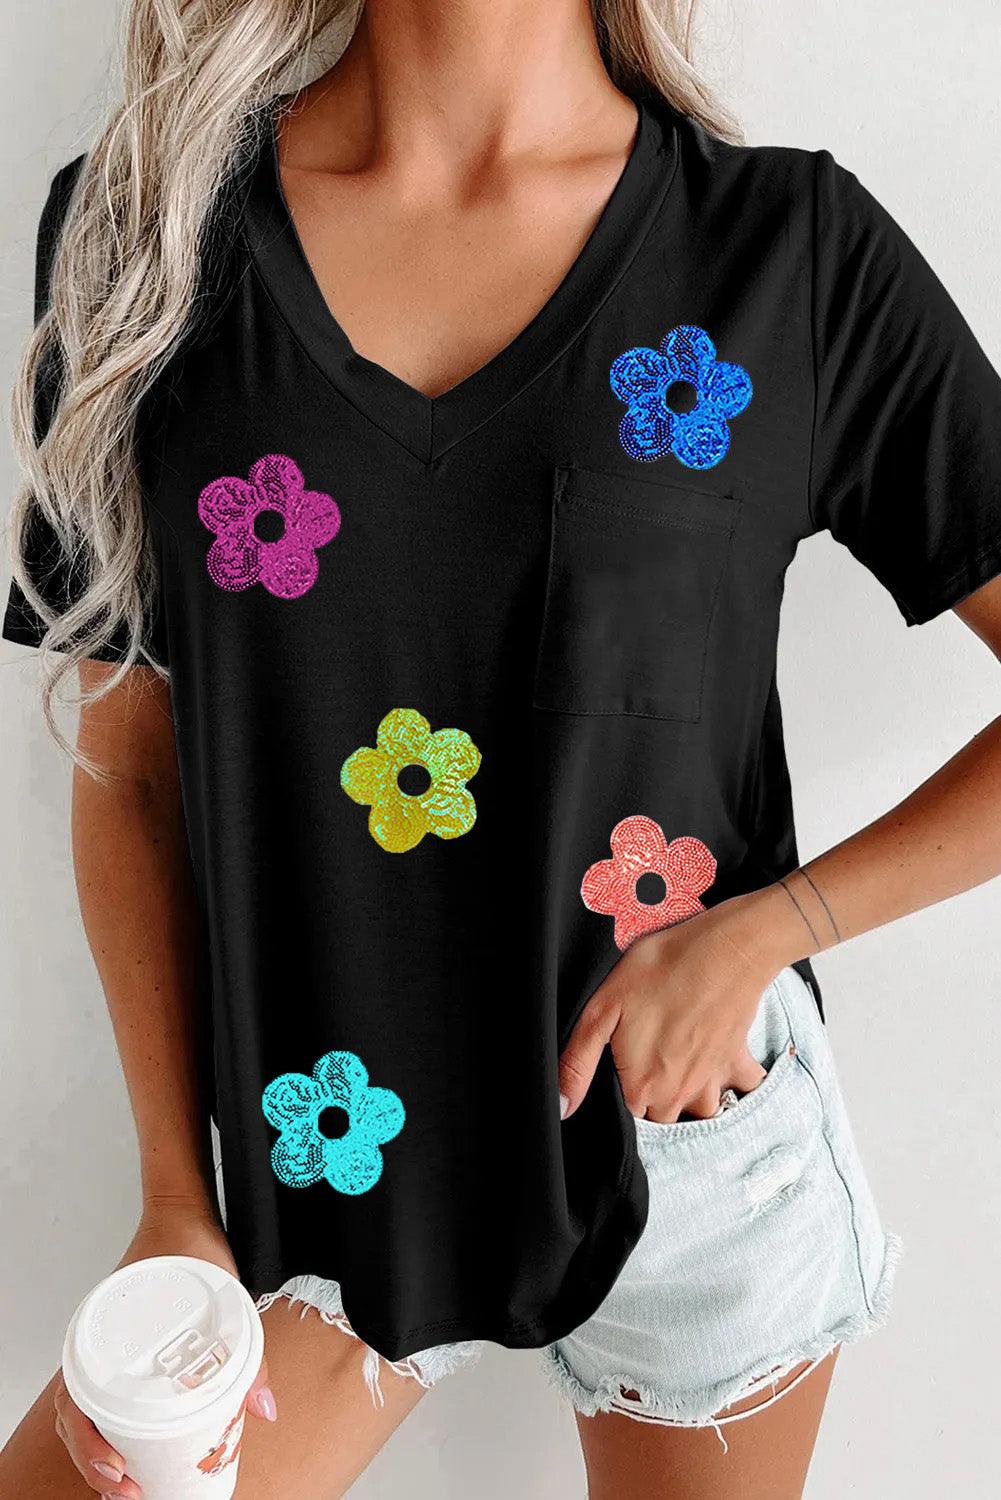 Black Sequined Flower Pocketed V Neck T Shirt - L & M Kee, LLC